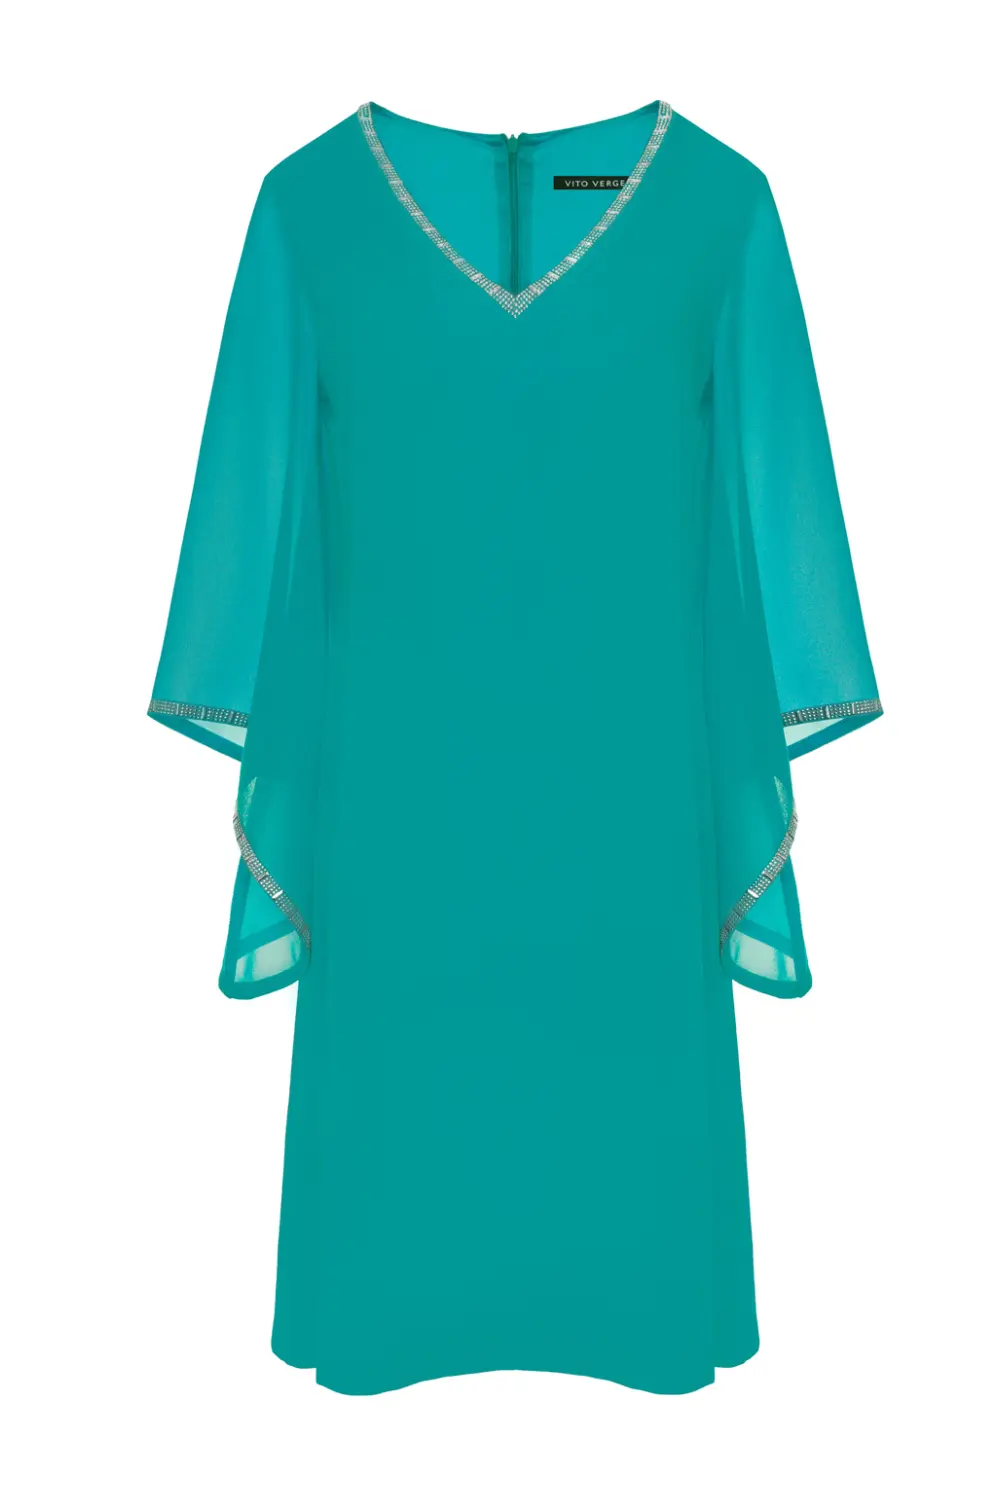 Kolekcja wizytowa. Zielona sukienka z szyfonu na duże rozmiary marki Vito Vergelis